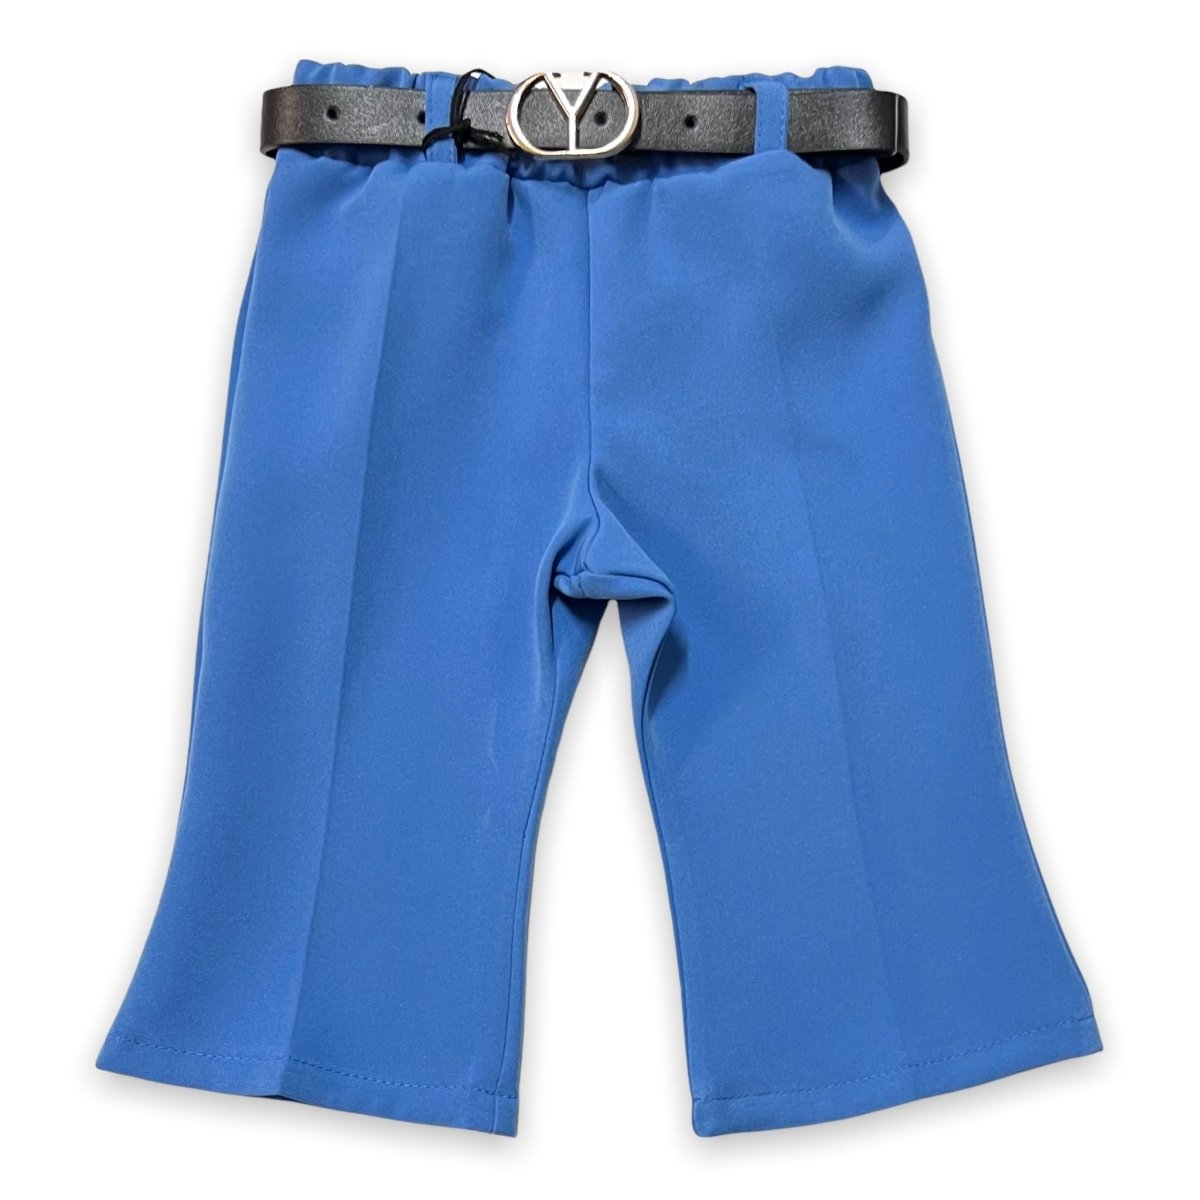 Pantalone a Zampa Neonata - Mstore016 - Pantalone neonata - Granada